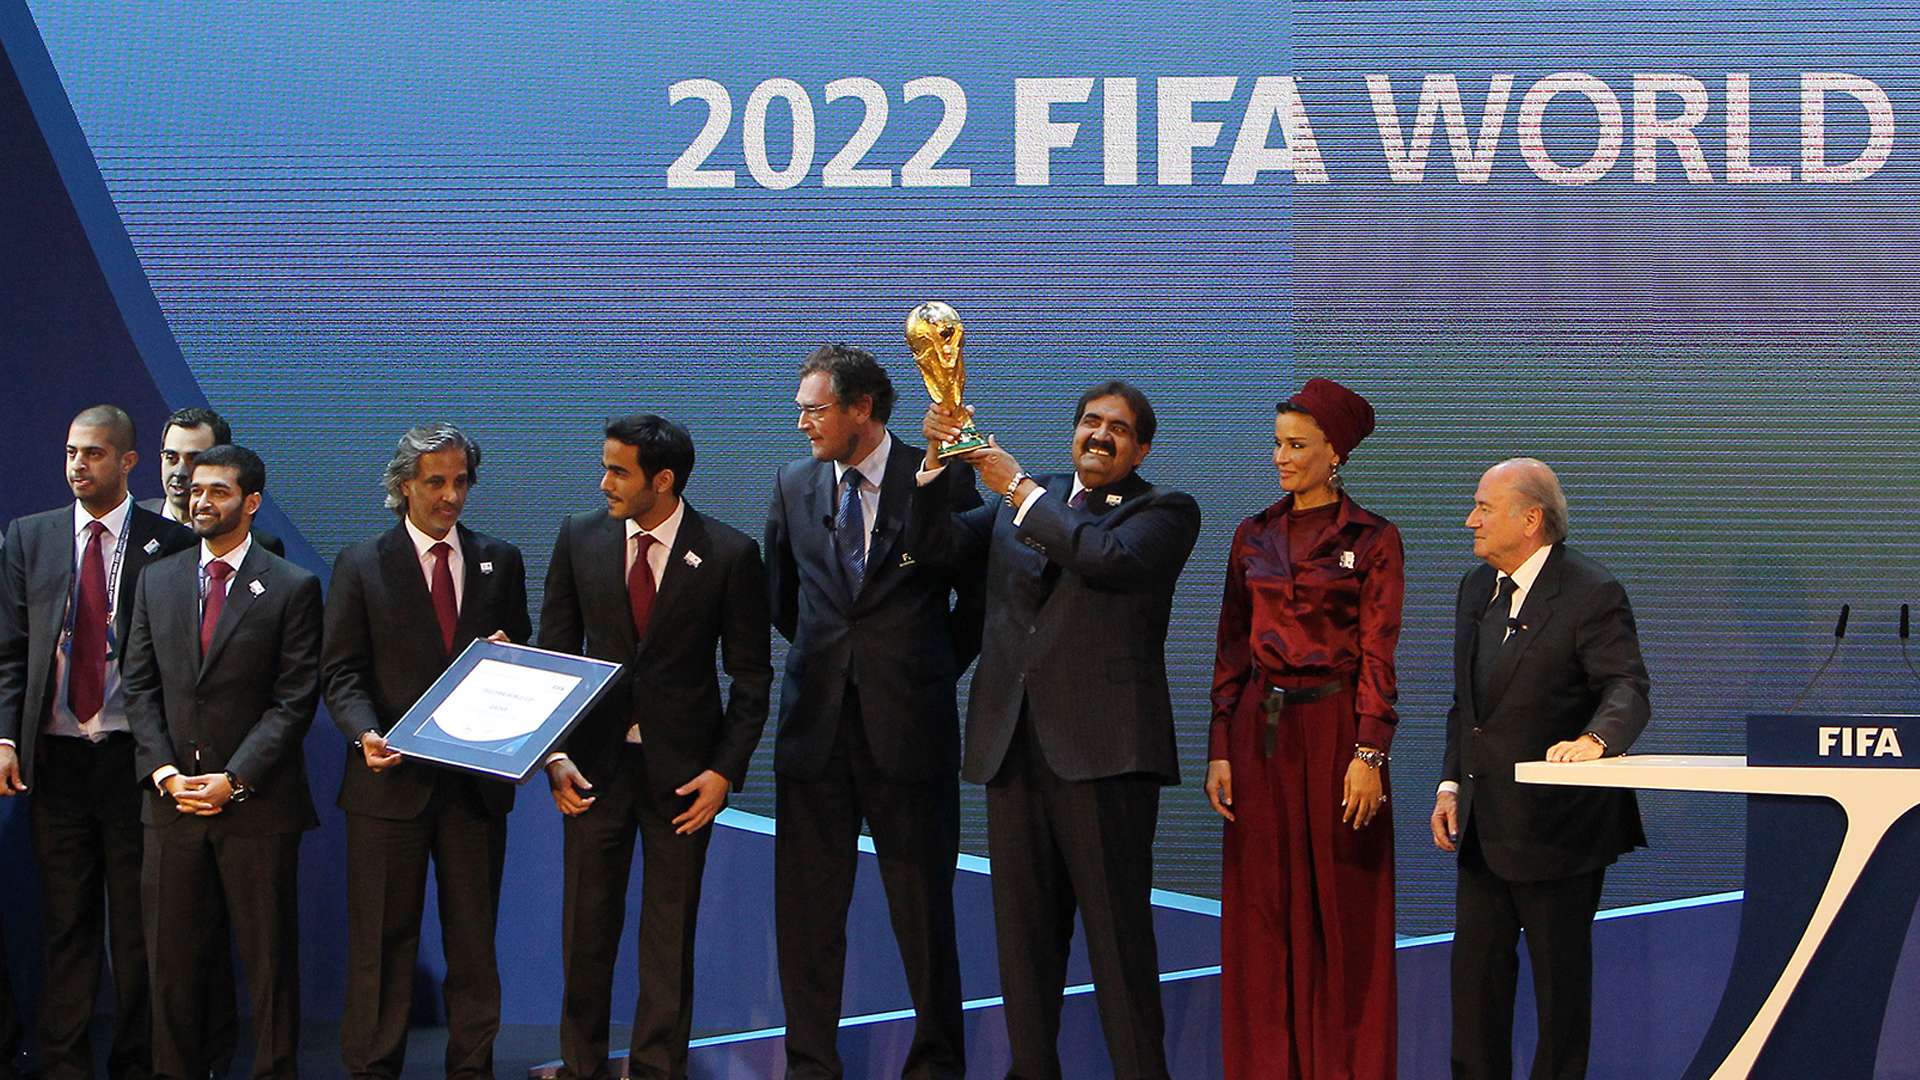 Qatar World Cup 2022 bid FIFA